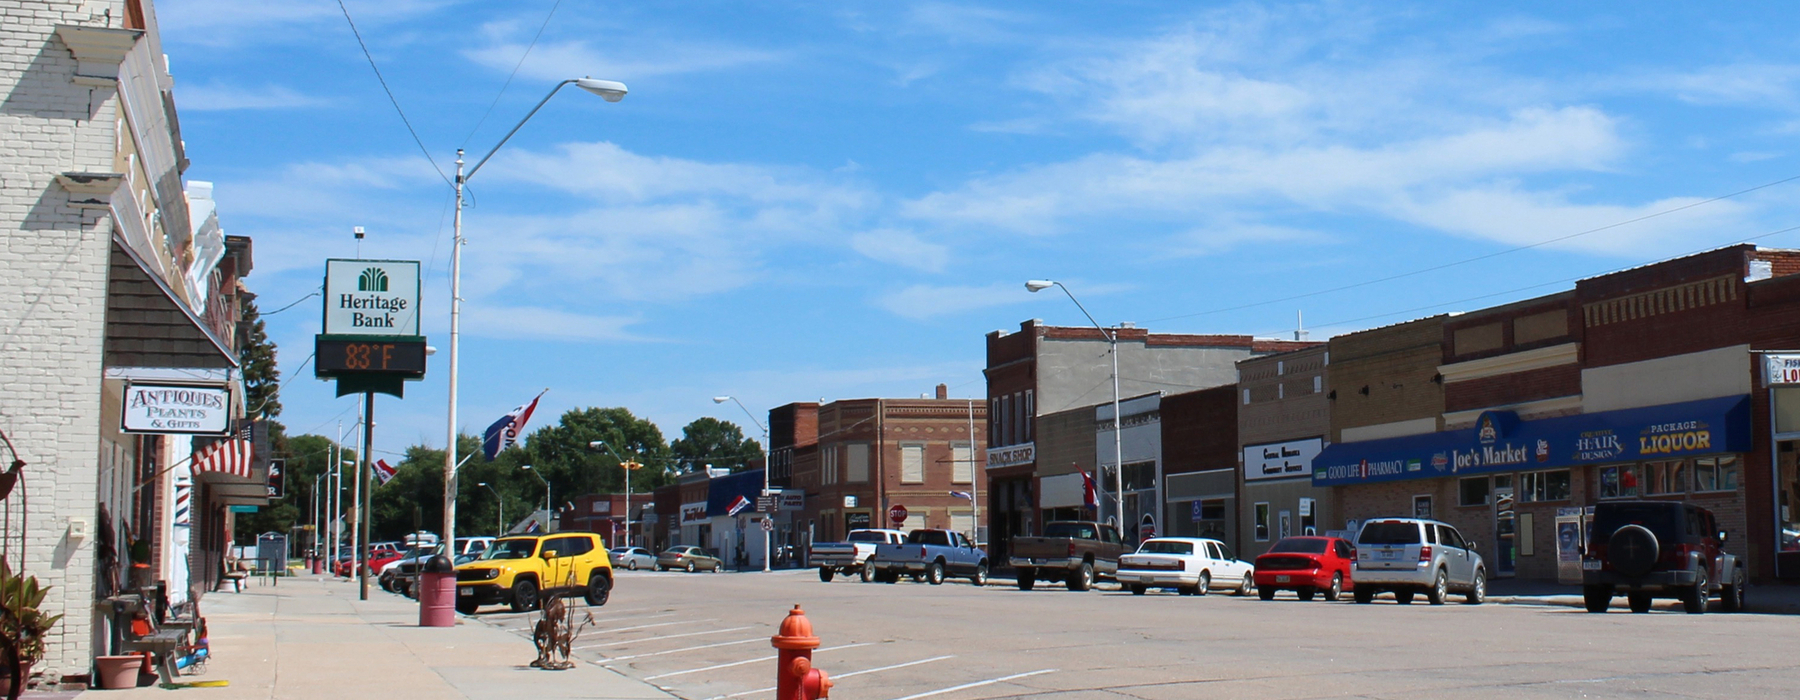 Calle principal de una pequeña ciudad con automóviles a lo largo de la calle y negocios a lo largo de la calle. Cielo azul.